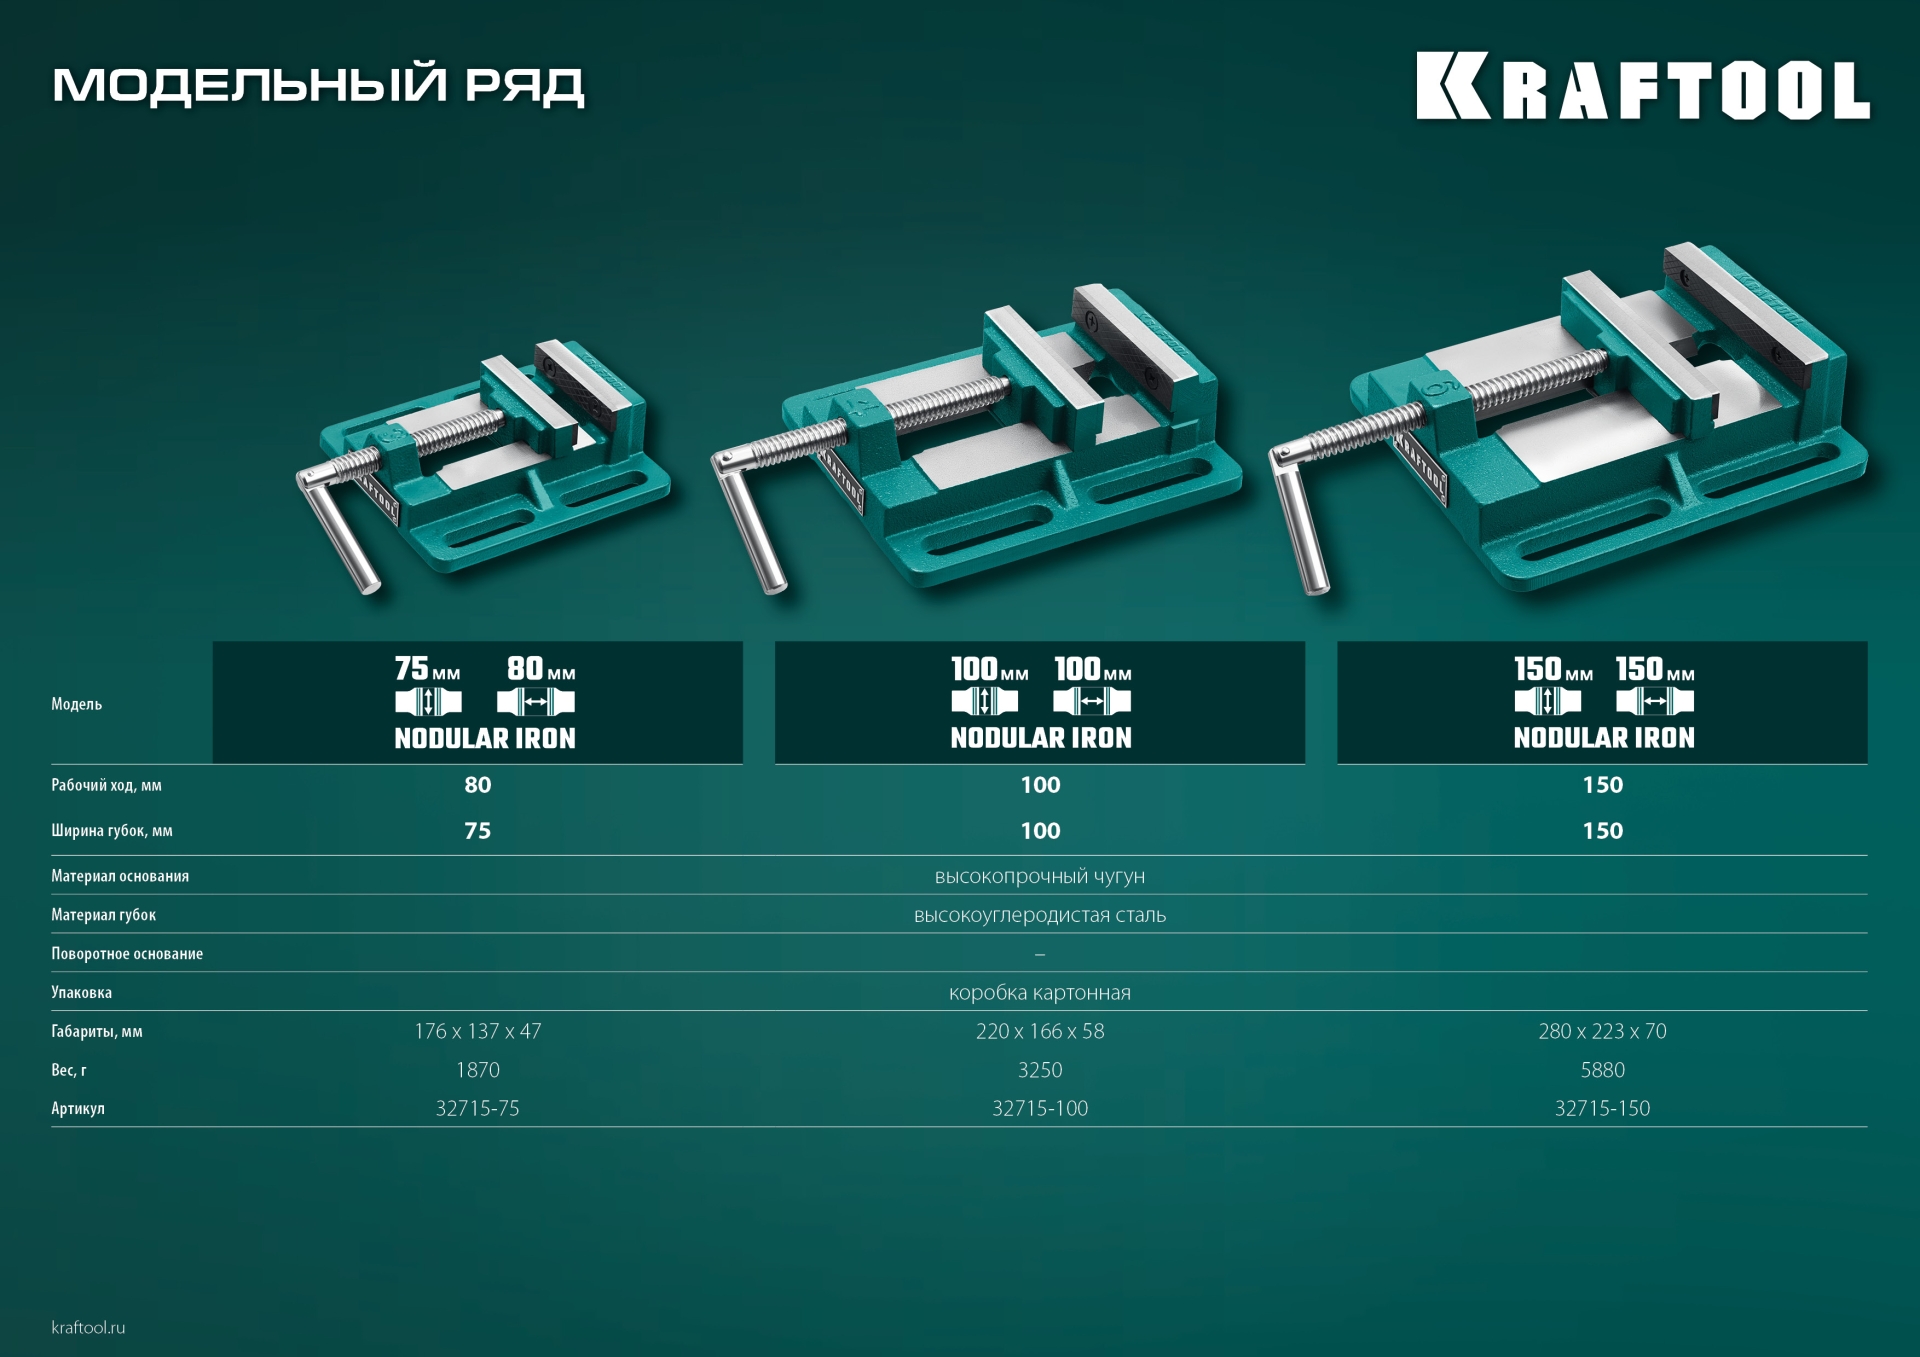 KRAFTOOL 75 мм, станочные сверлильные тиски (32715-75)